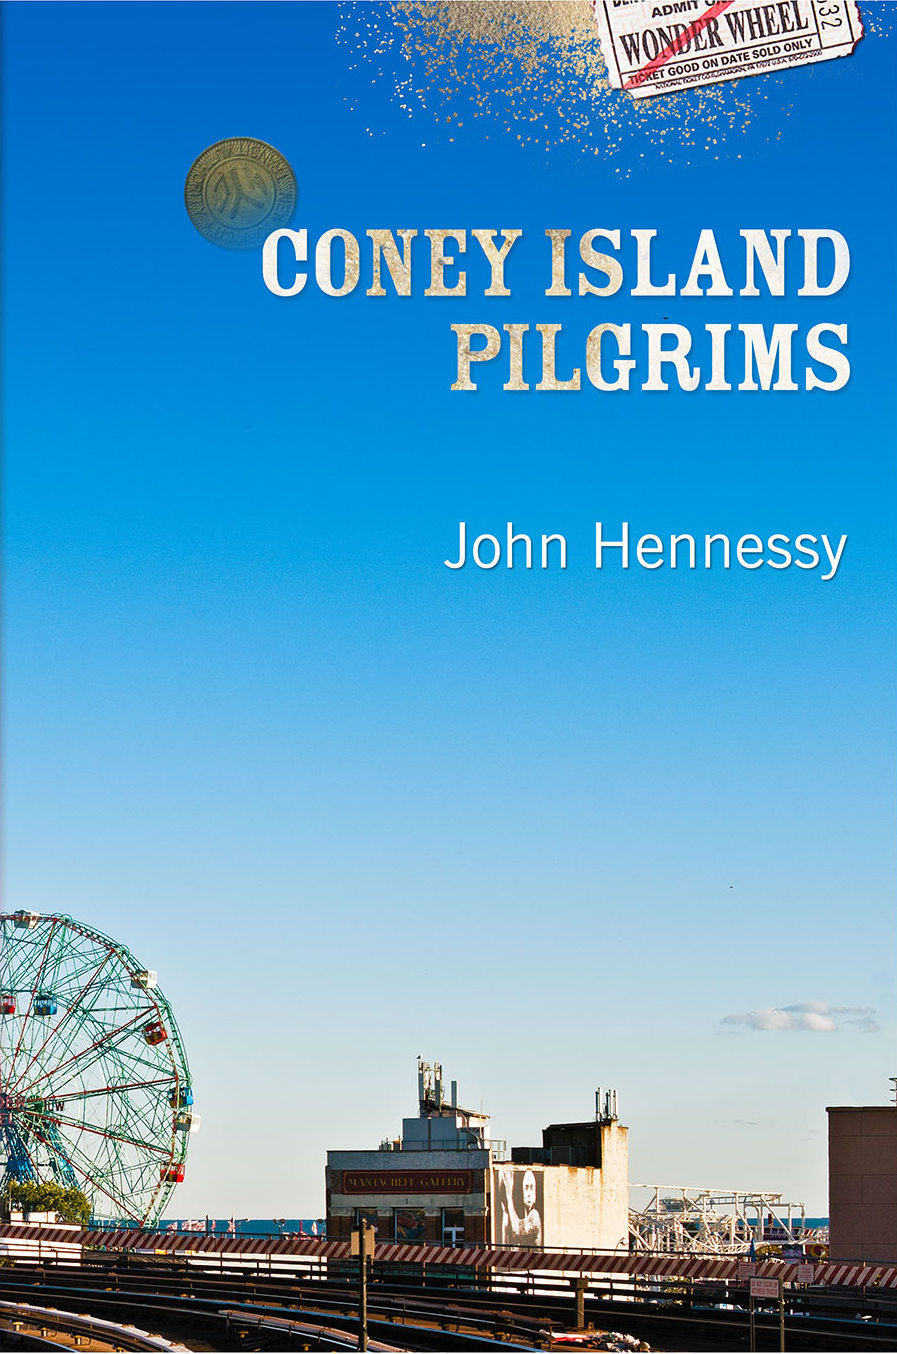 Coney Island Pilgrims #5 on SPD's Bestseller List for June